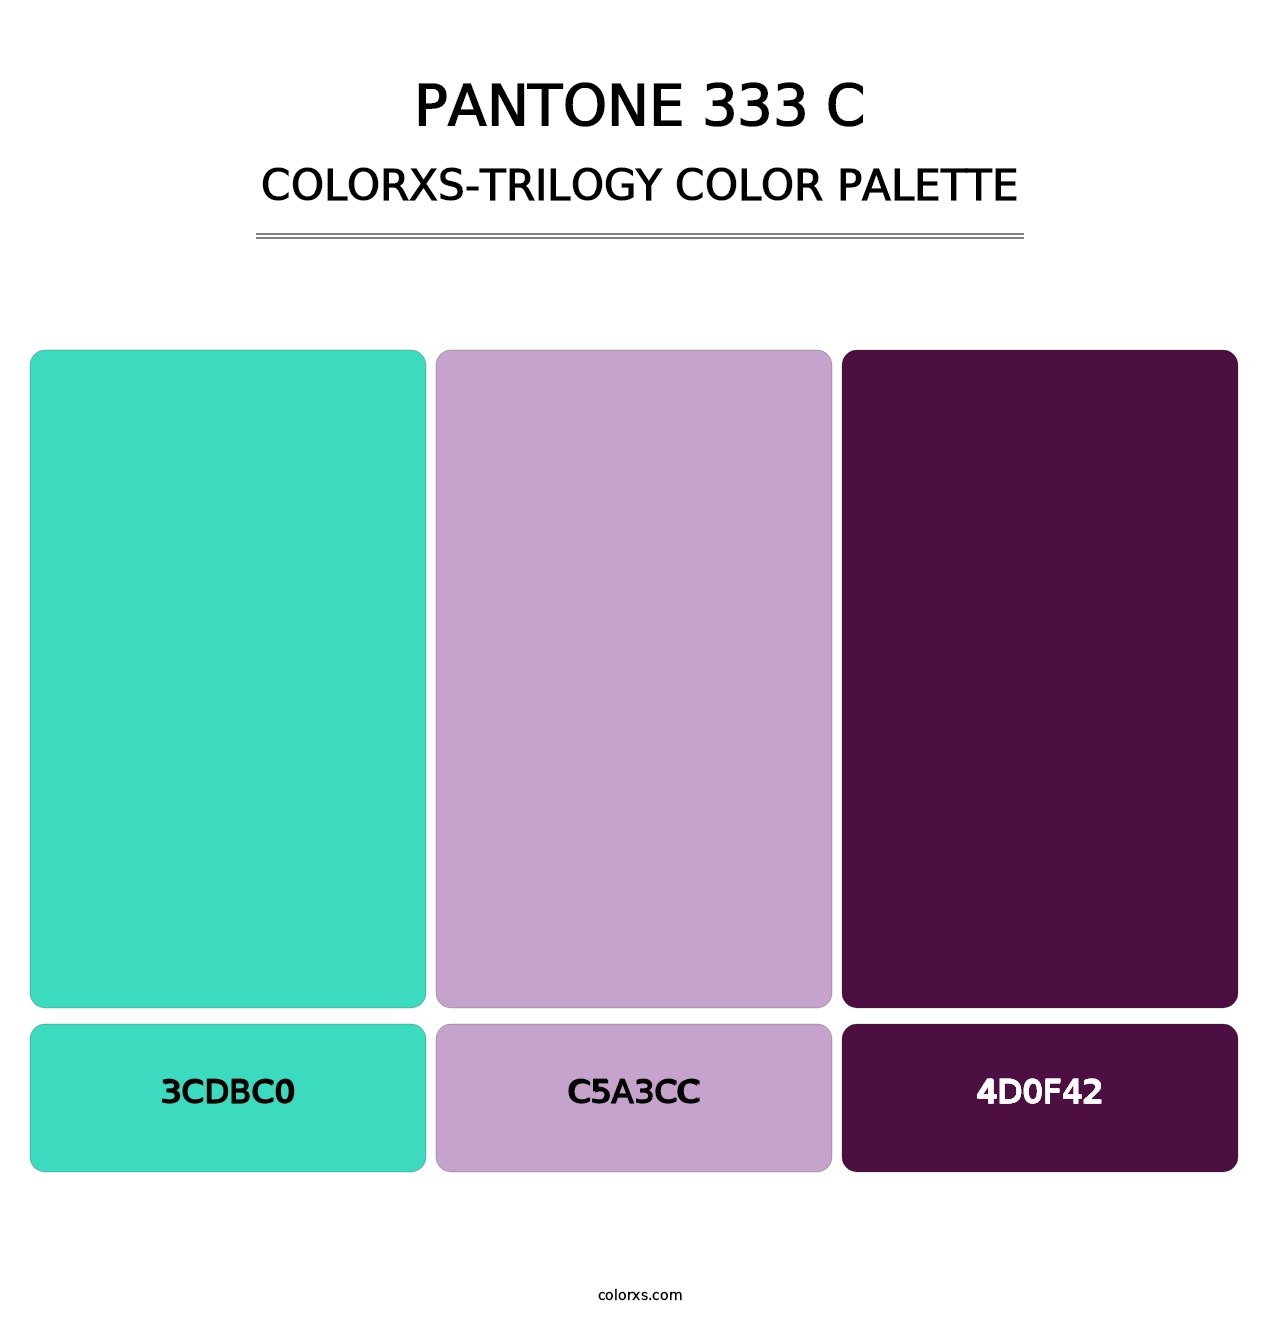 PANTONE 333 C - Colorxs Trilogy Palette